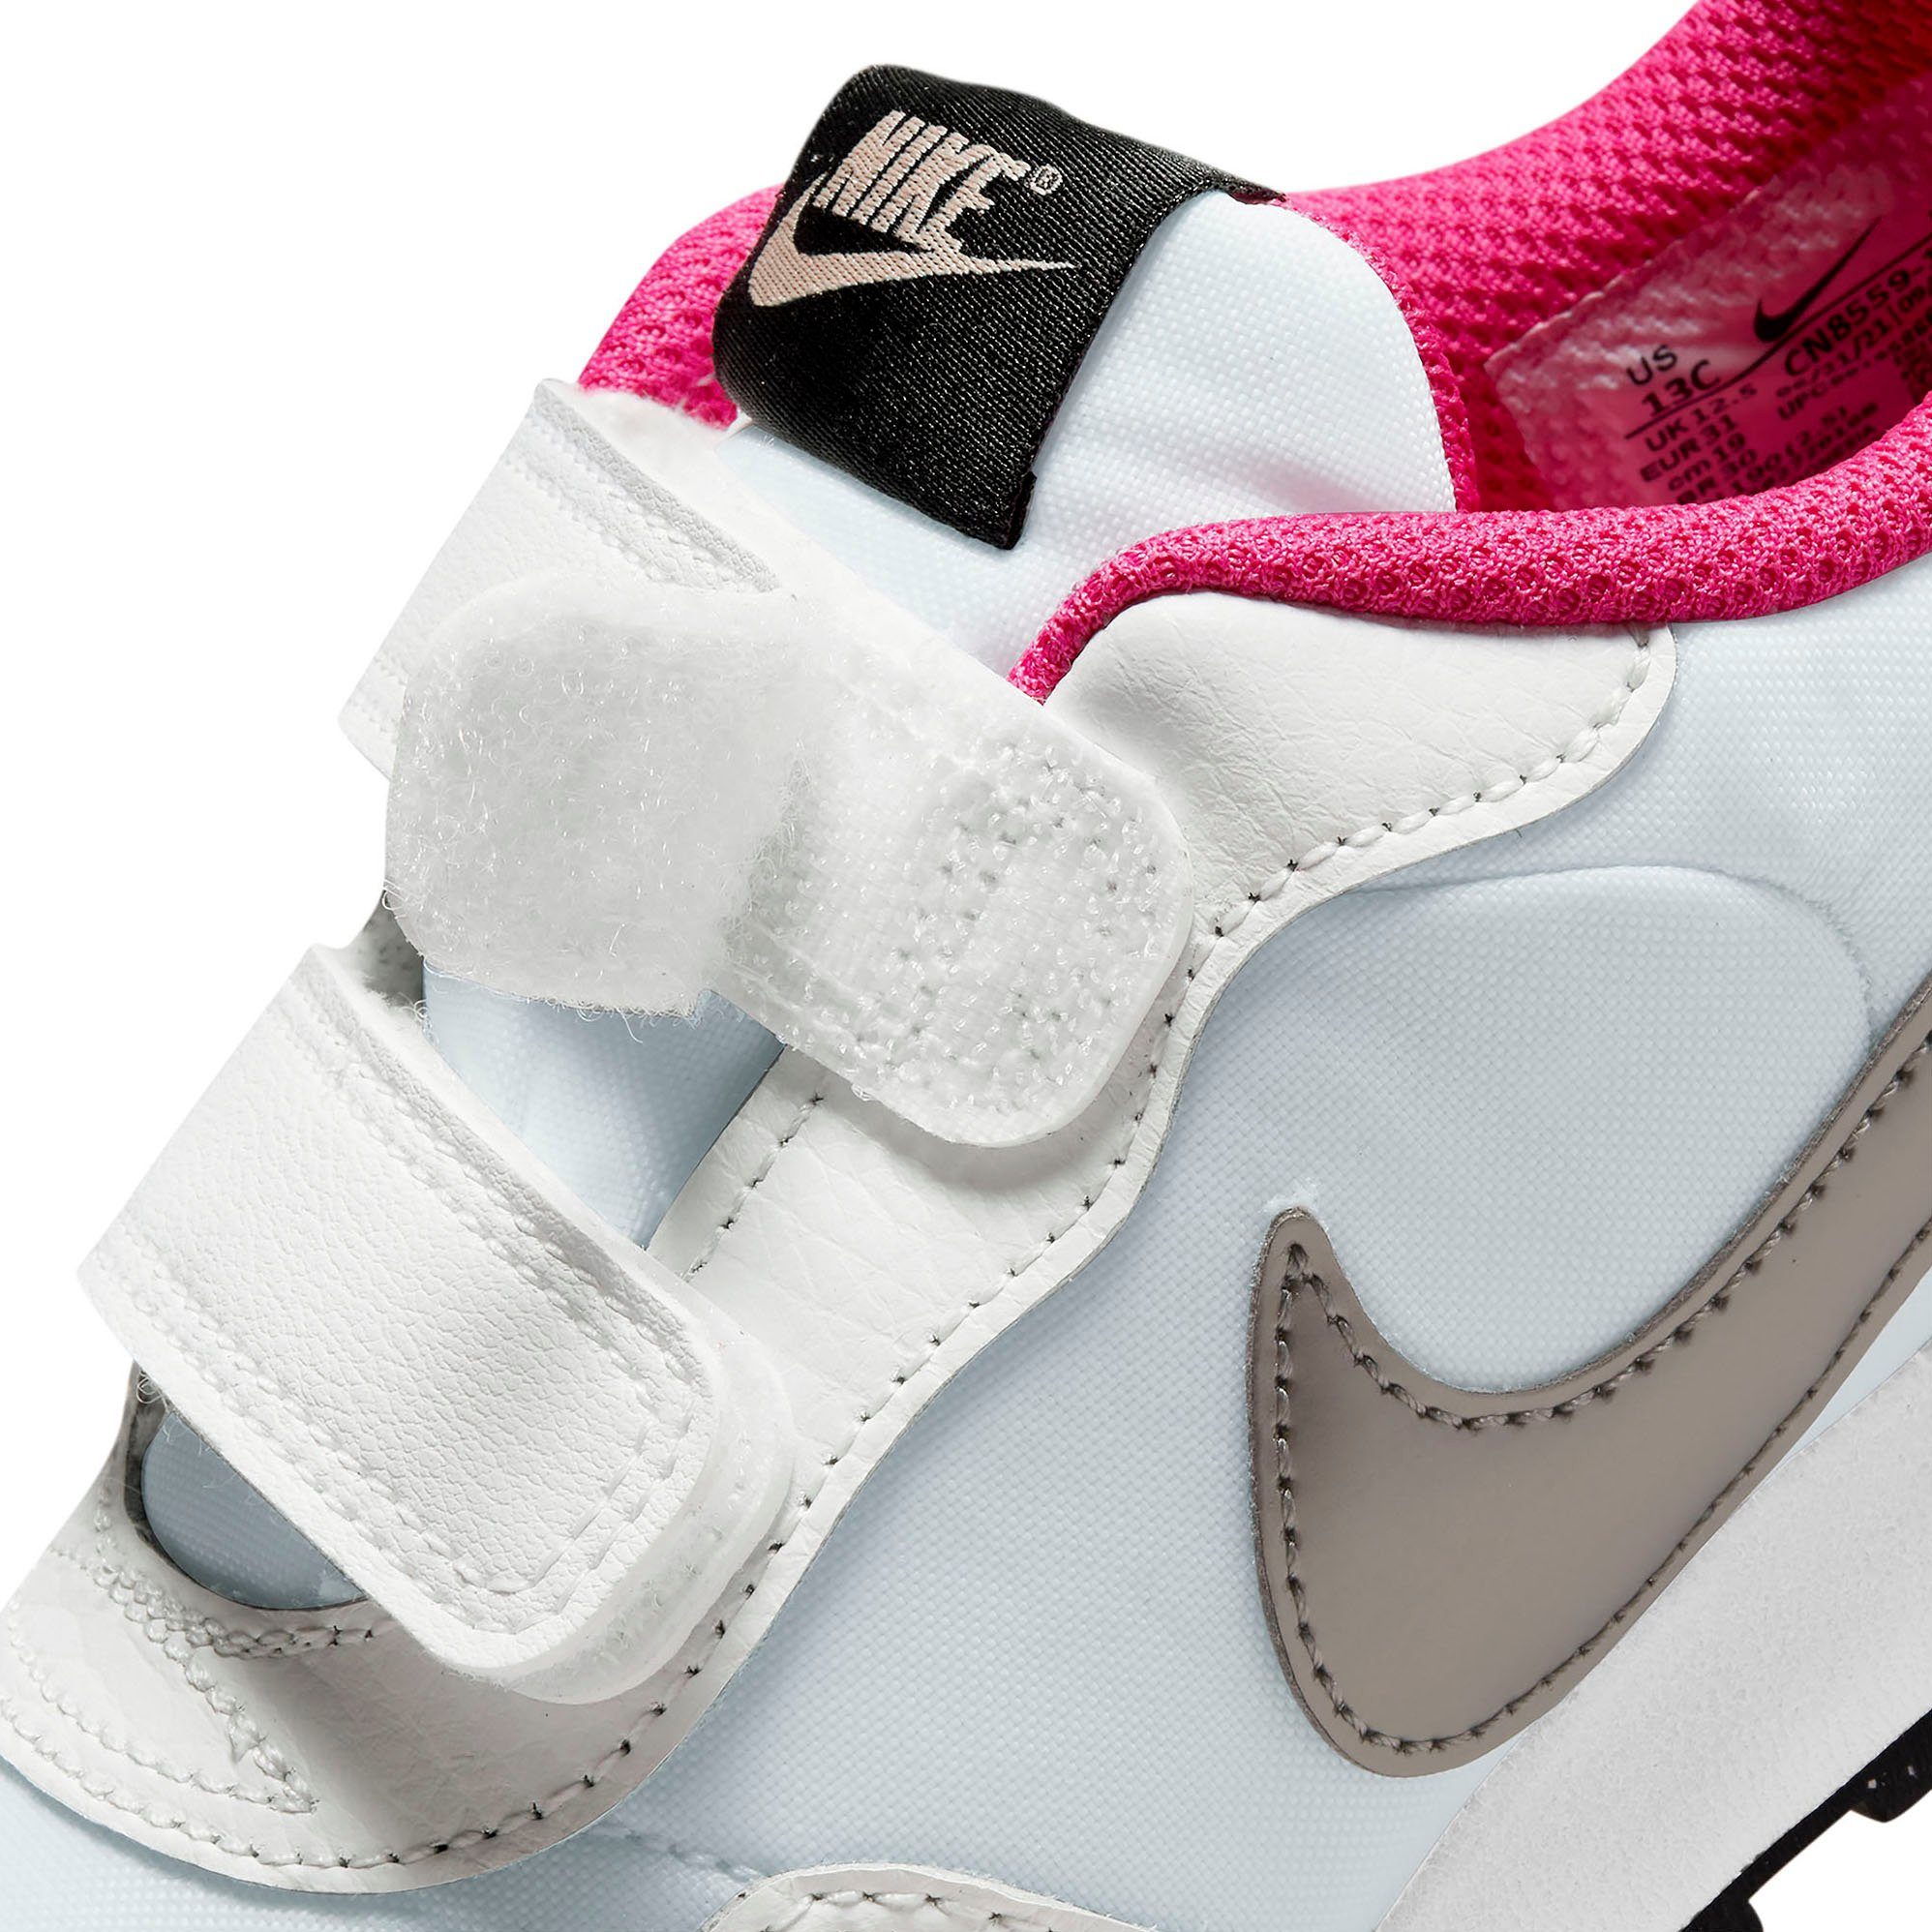 weiß-pink MD Sportswear Sneaker (PS) mit VALIANT Klettverschluss Nike